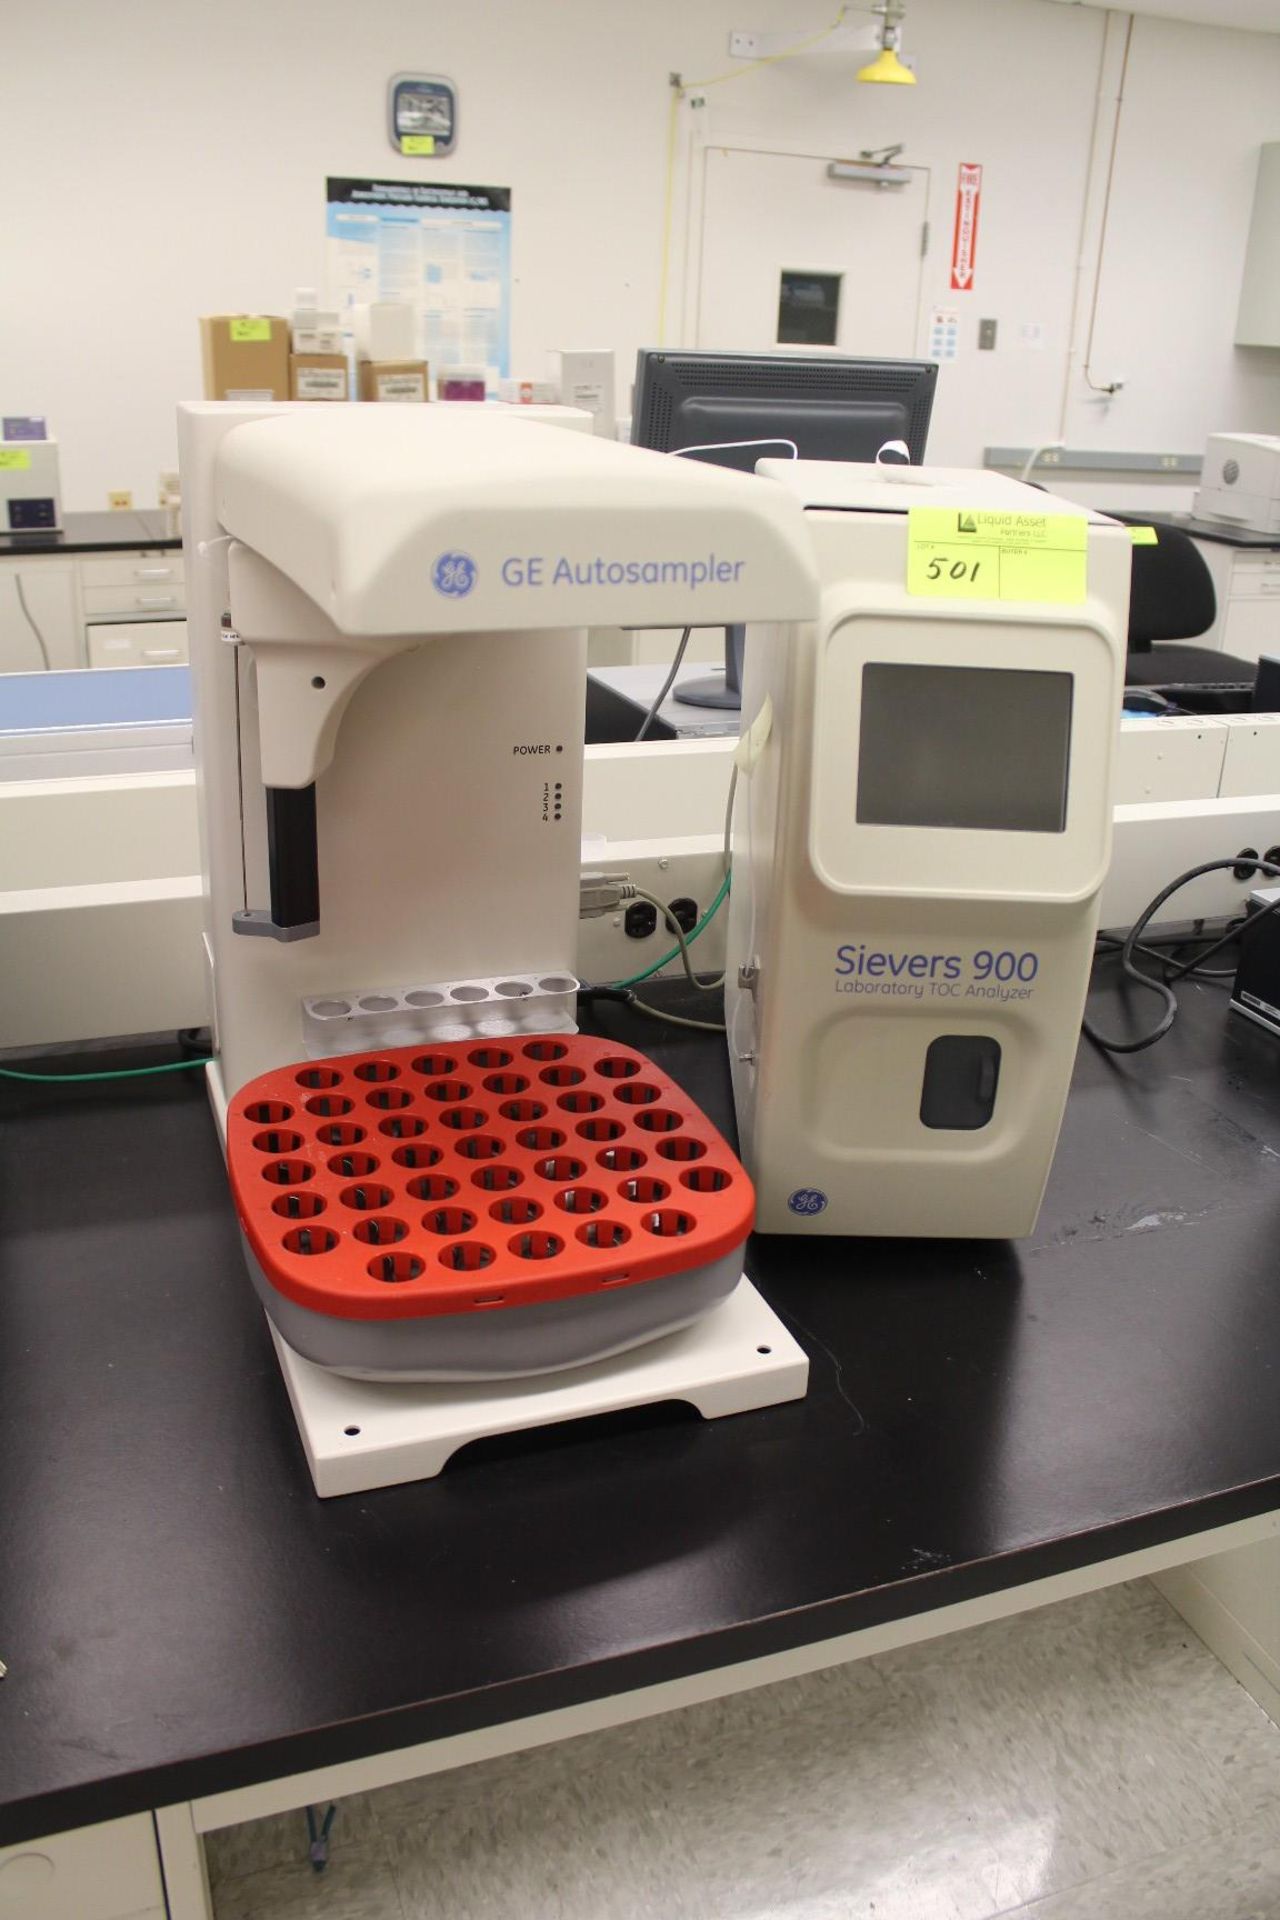 GE Autosampler, M# TOC 900 Lab W/ Sievers 900 Laboratory TOC Analyzer